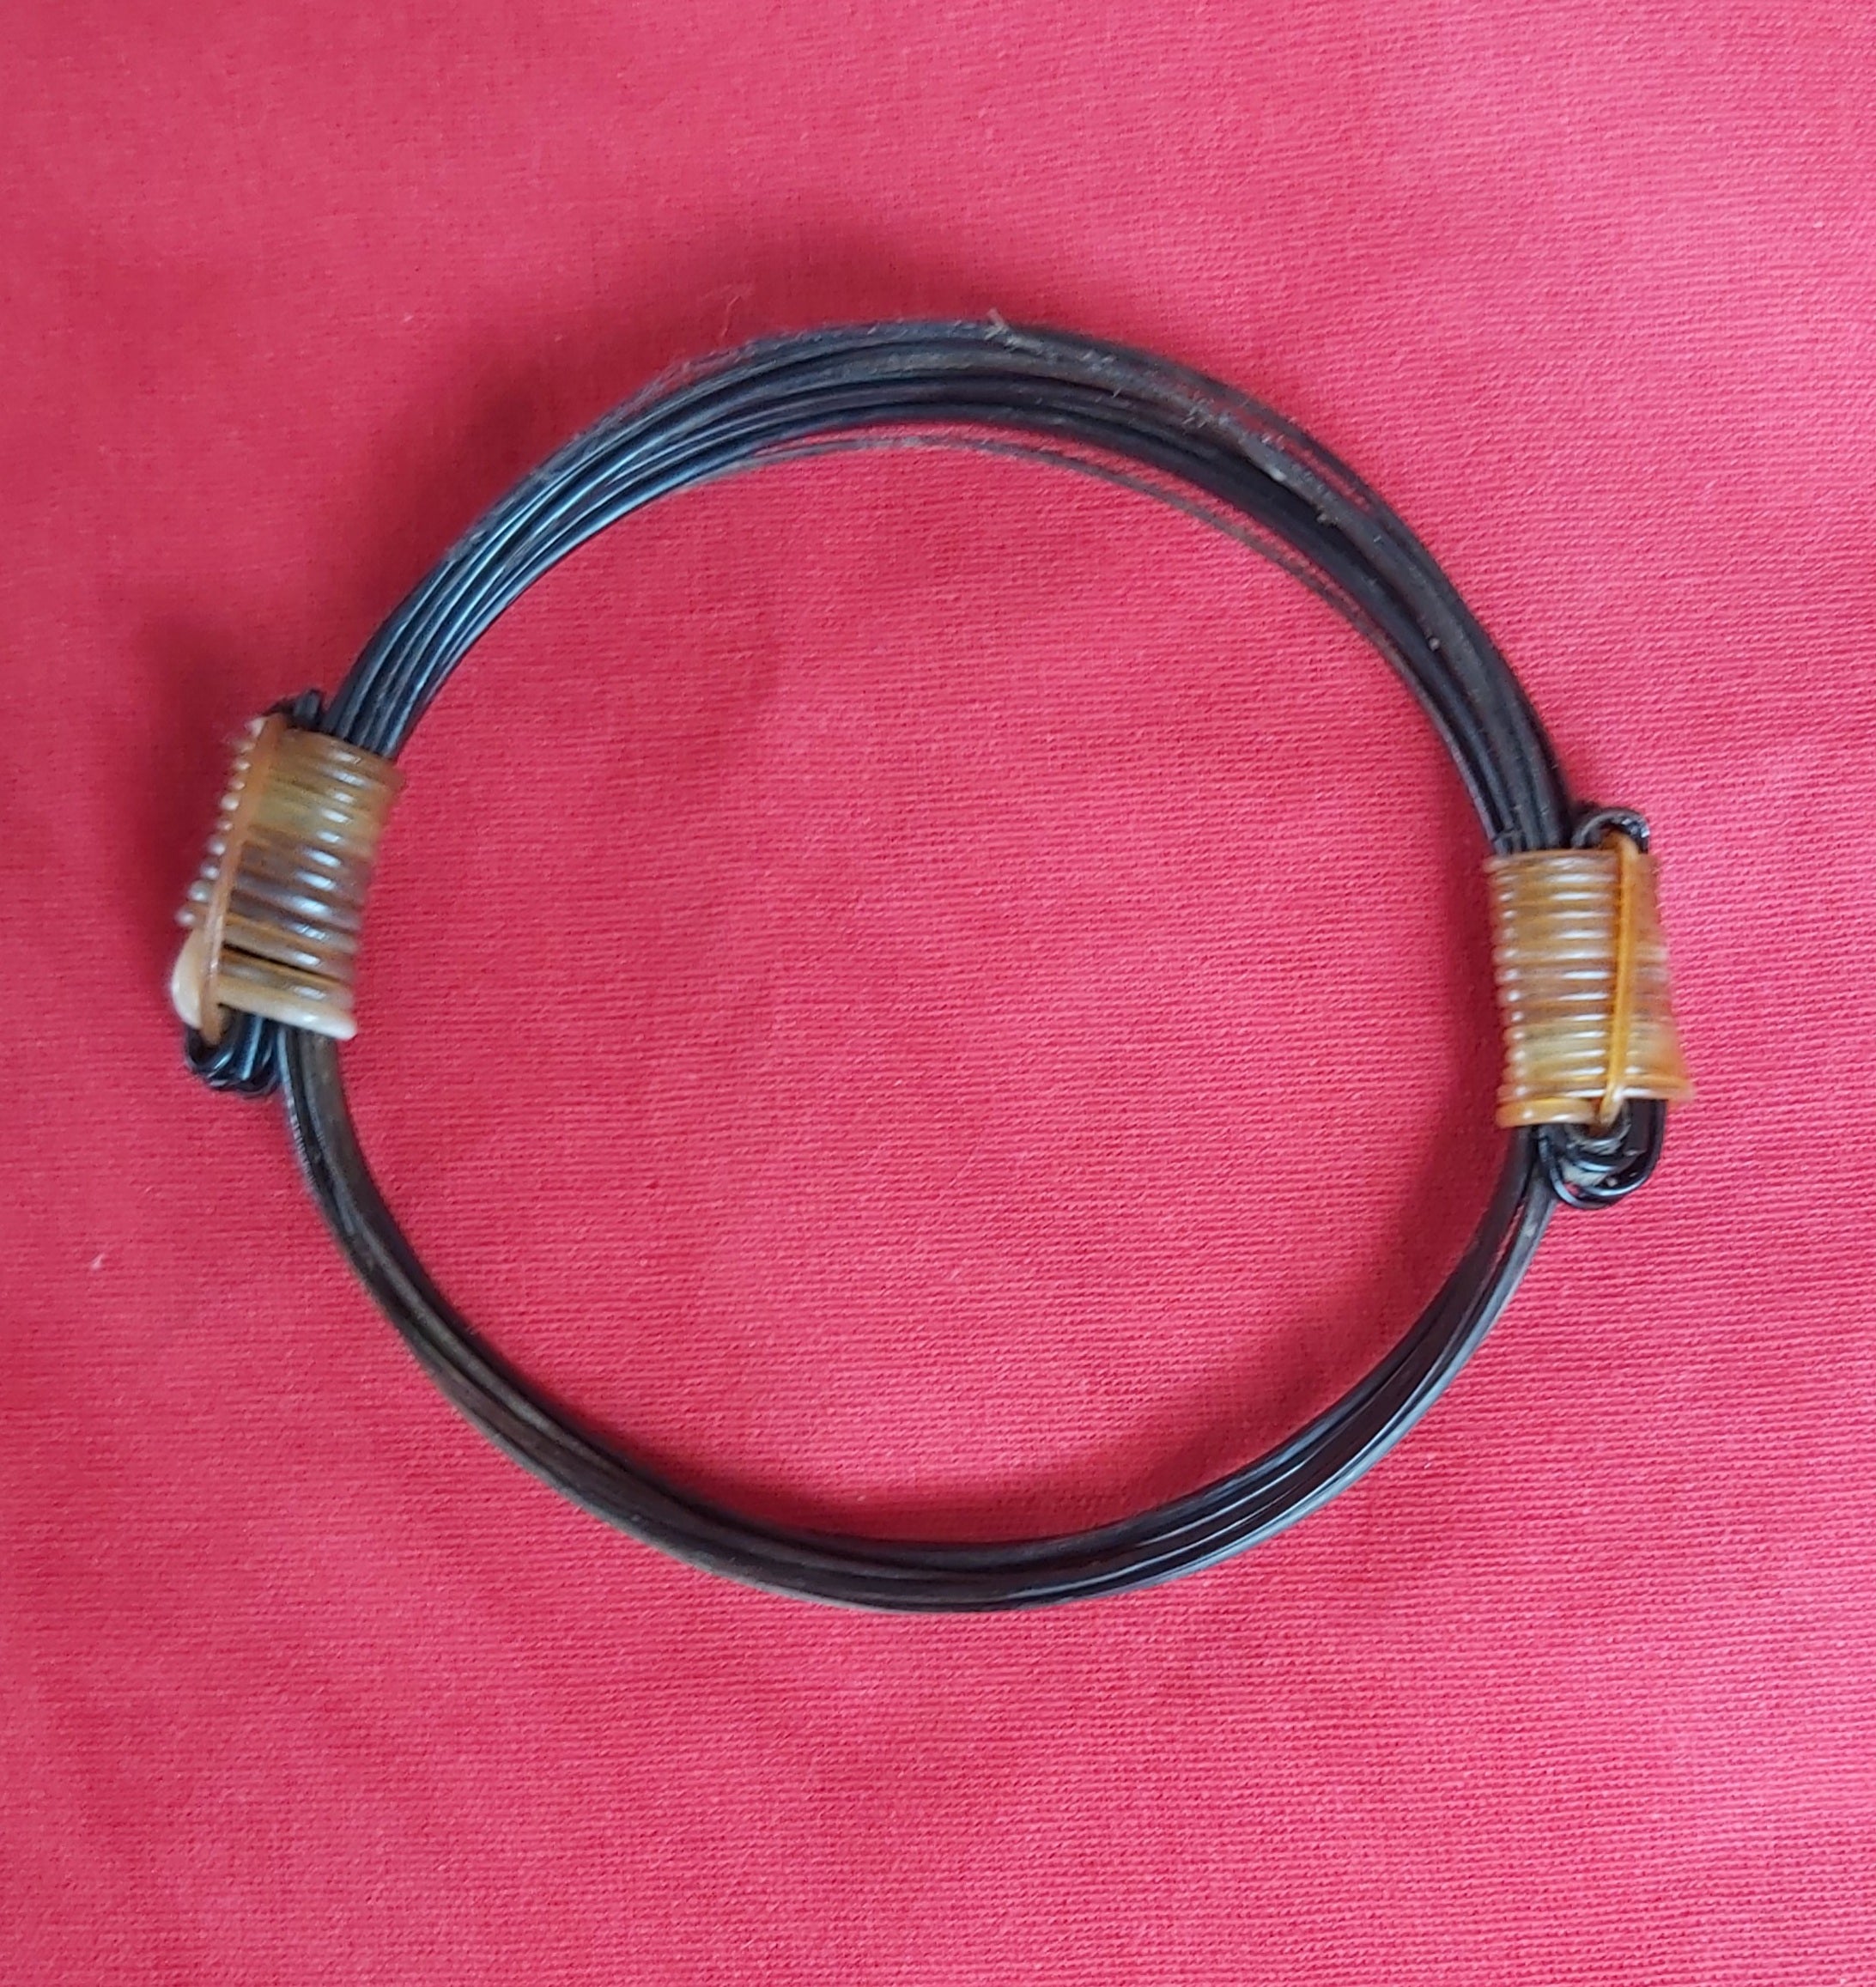 MC8 White/black elephant hair bracelet 4" diameter